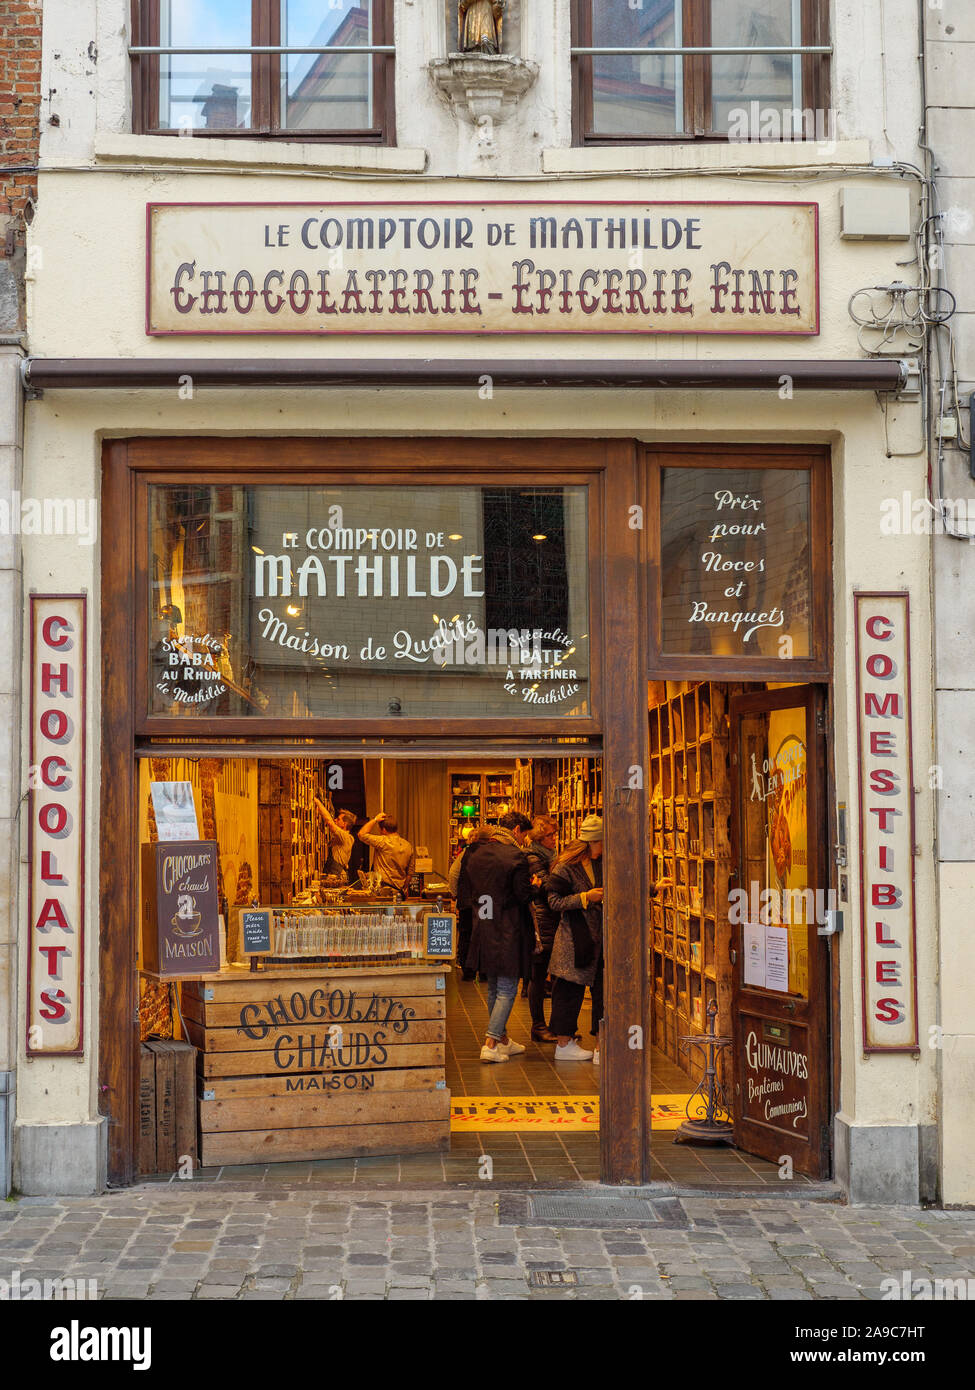 Boutique Le Comptoir de Mathilde